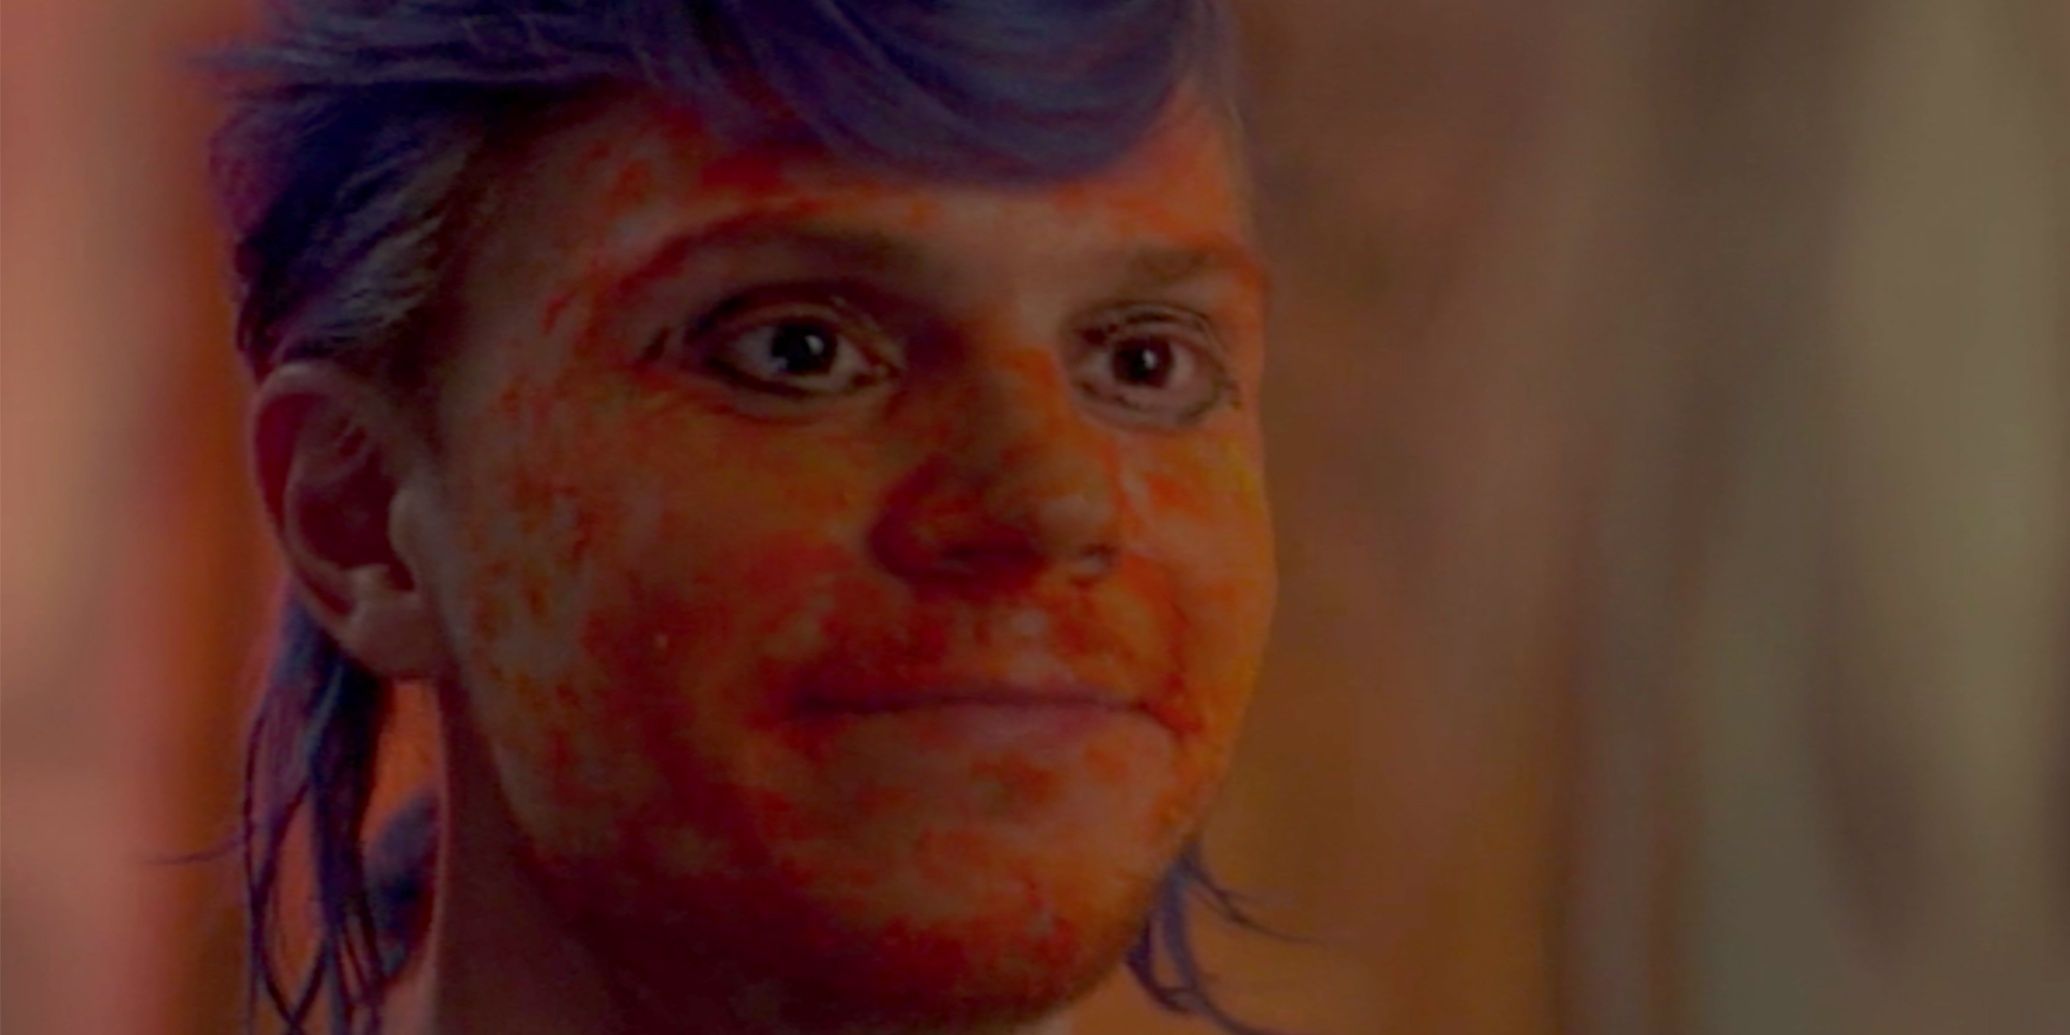 إيفان بيترز بدور كاي في فيلم American Horror Story: Cult.  لديه شعر أزرق وغبار شيتو ملطخ على وجهه ، وينظر إلى اليمين بابتسامة متكلفة.